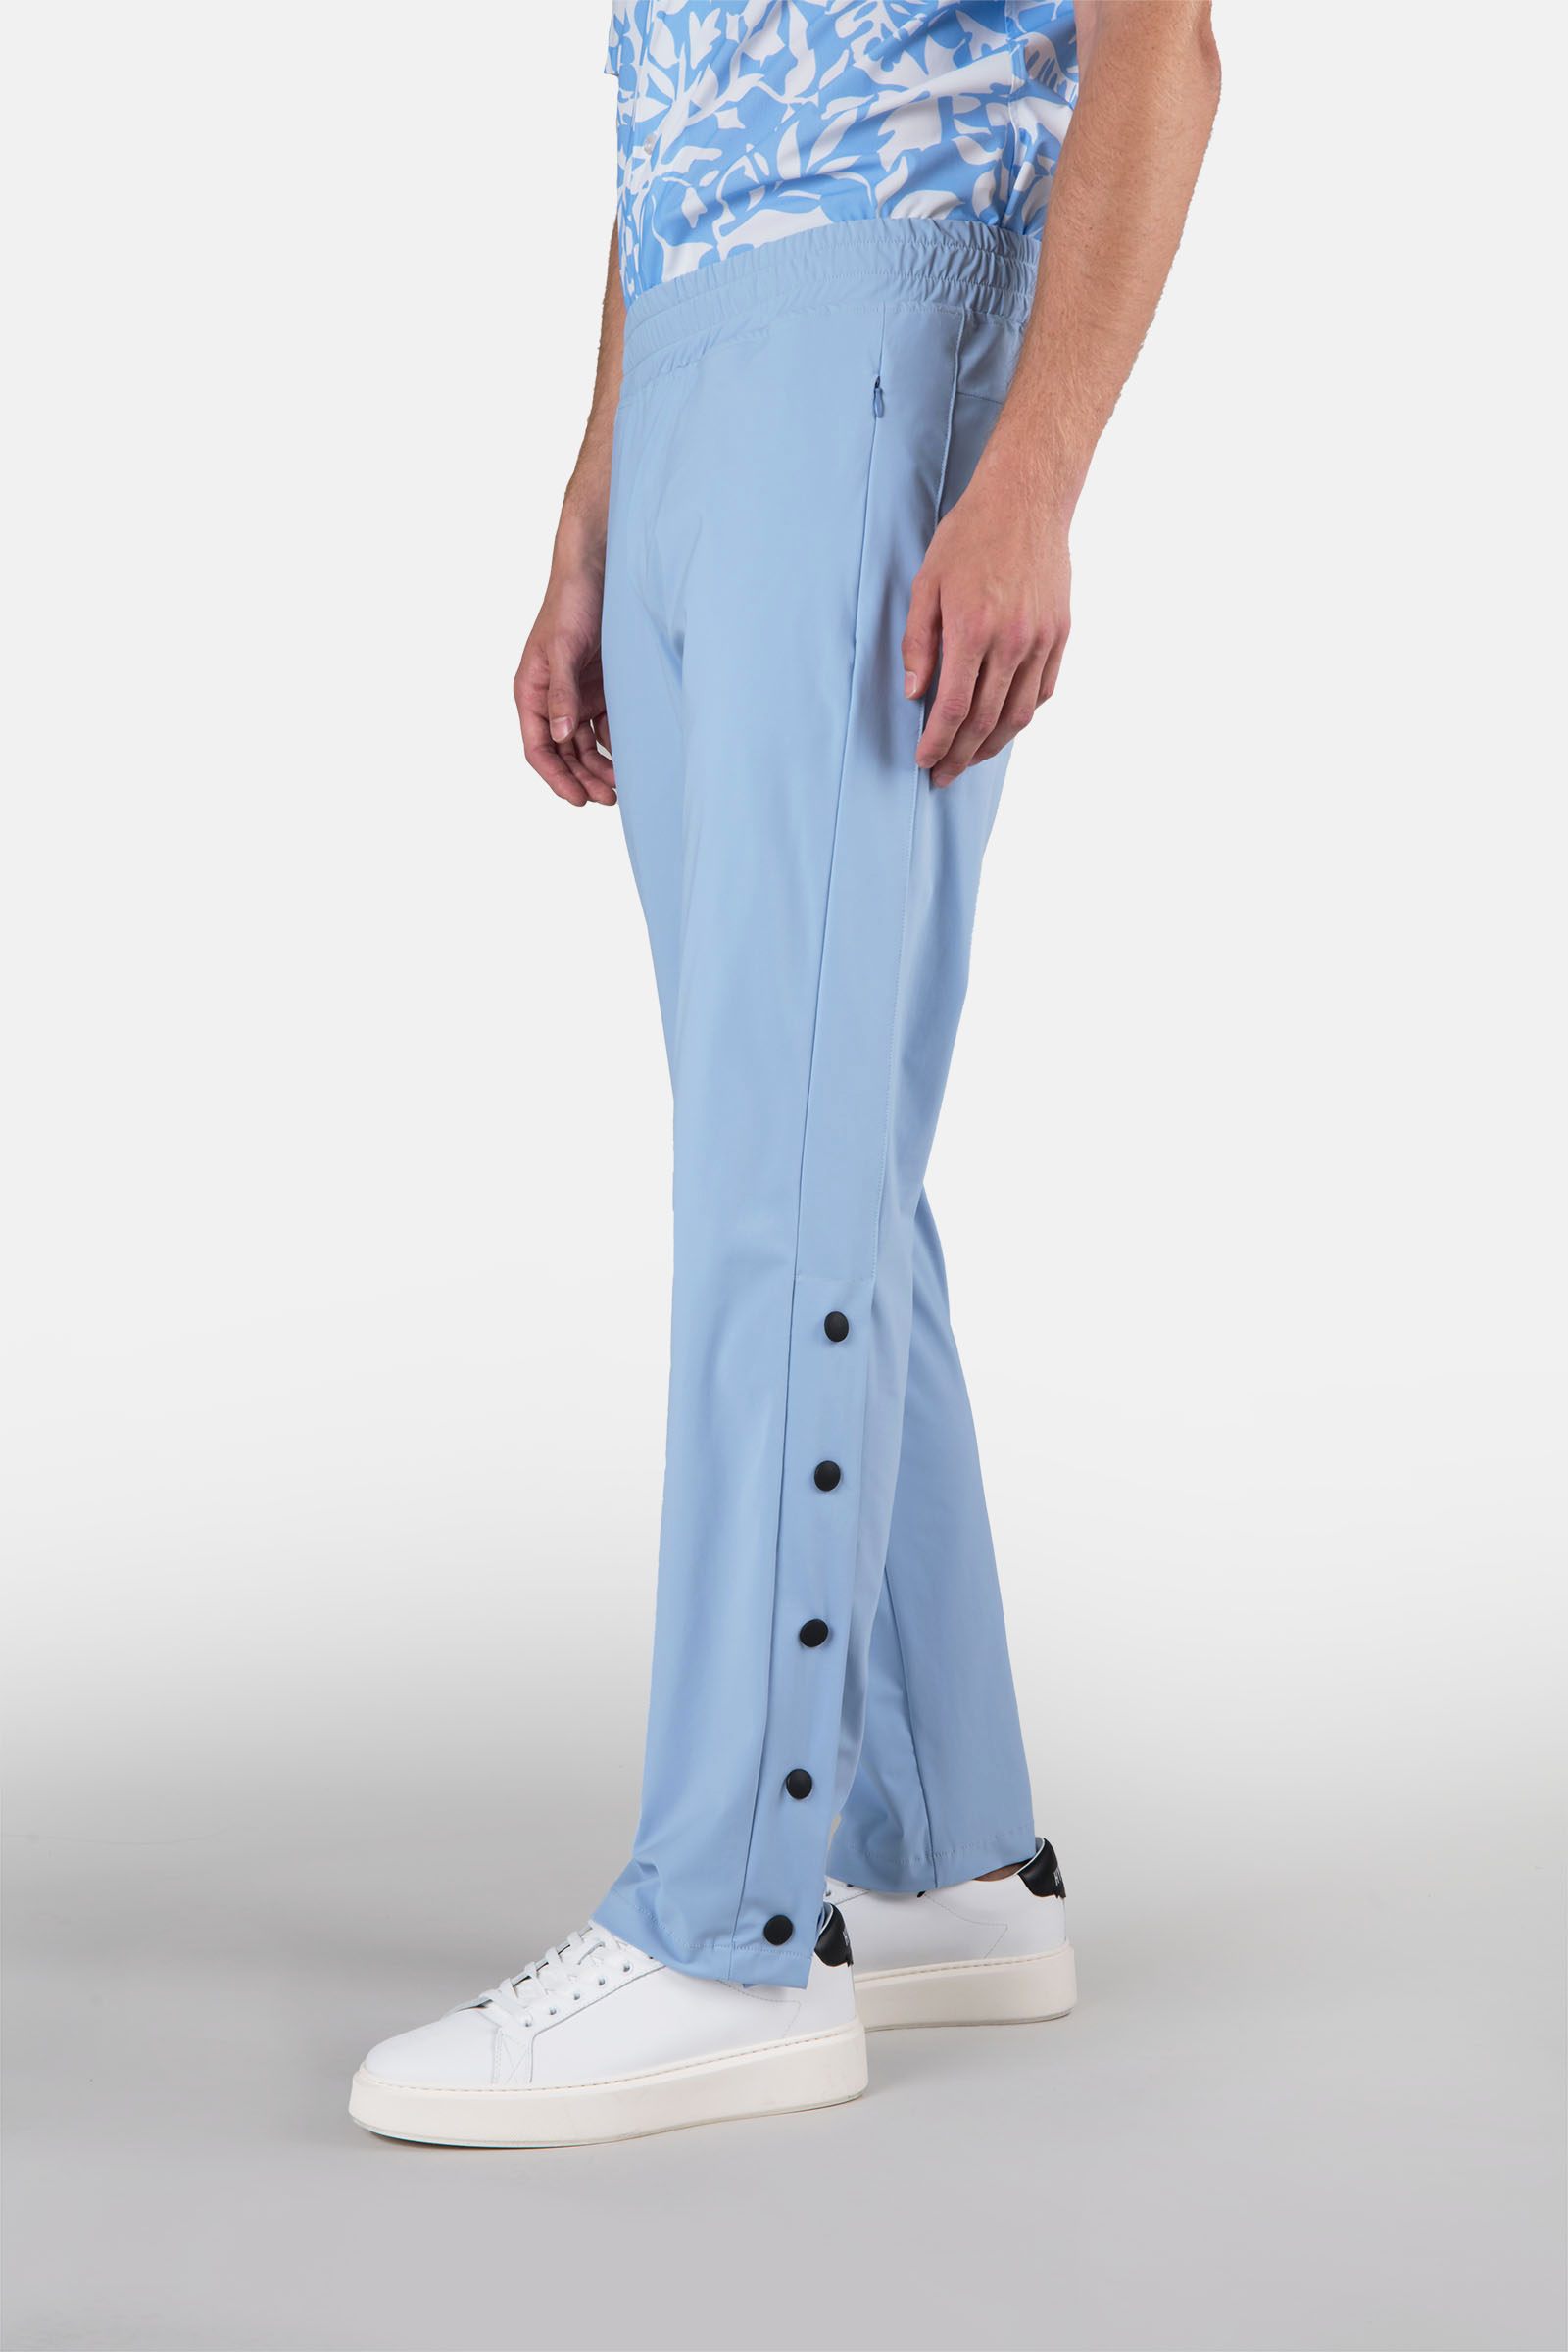 BASKET PANTS - LIGHT BLUE - Hydrogen - Luxury Sportwear